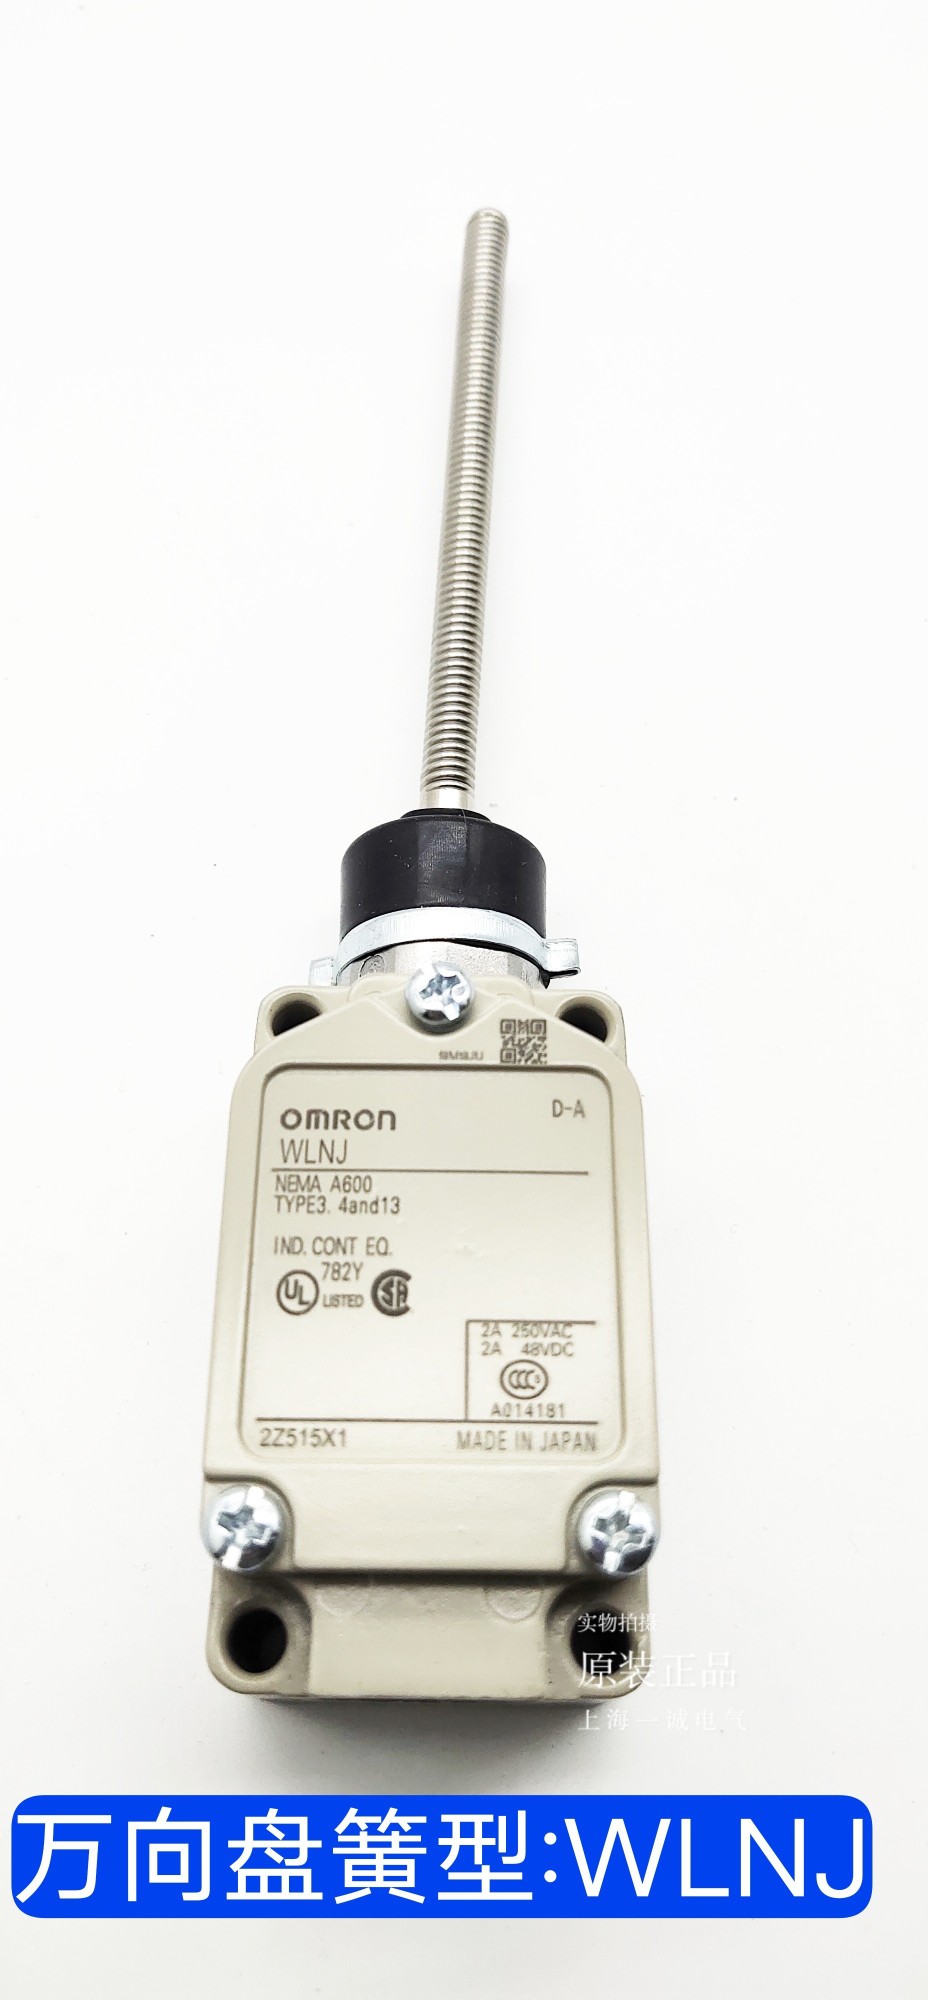 Công tắc hành trình OMRON công tắc hành trình kiểu nút nhấn mạch thuận nghịch dụng công tắc hành trình Công tắc hành trình